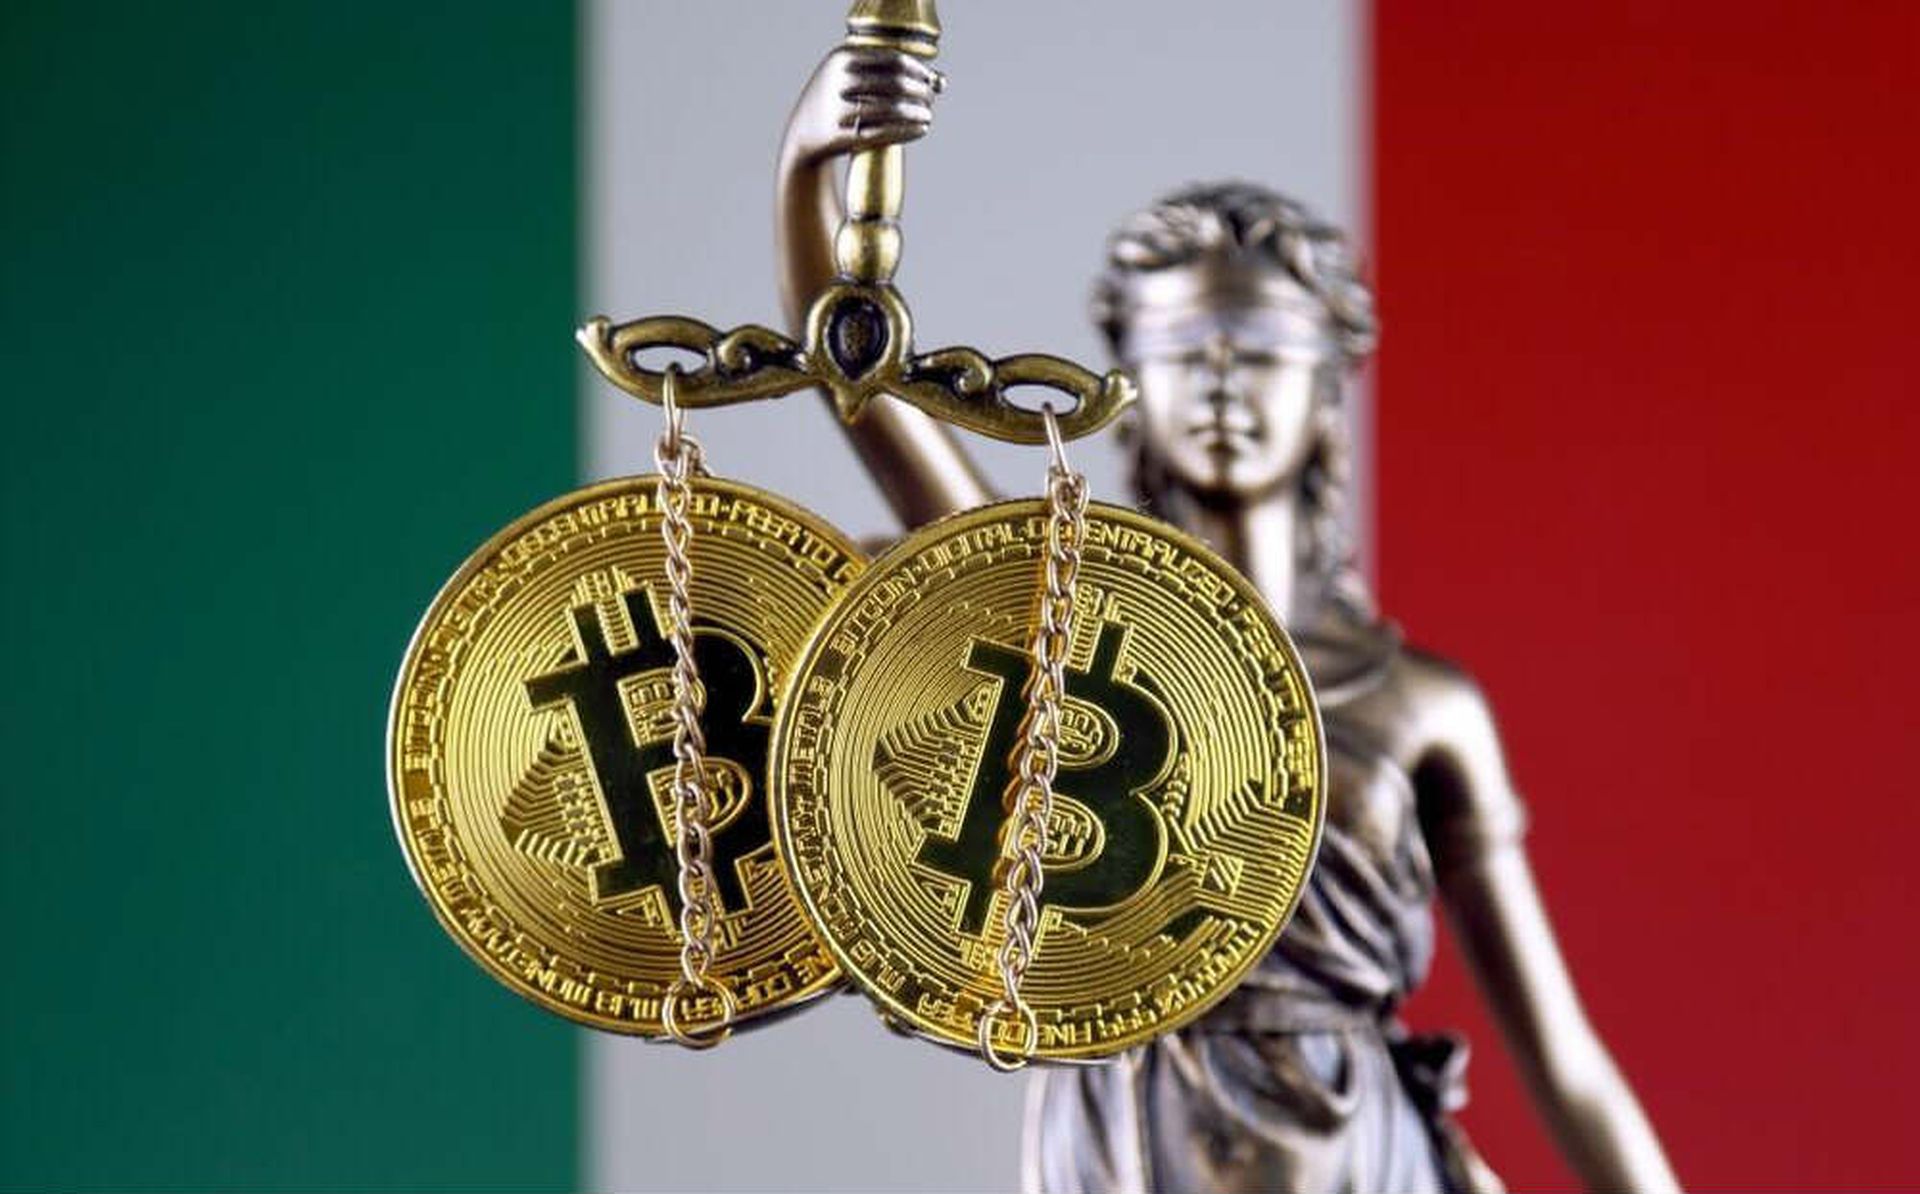 %26 Италия начнет вводить налог на криптовалюту с 2023 года